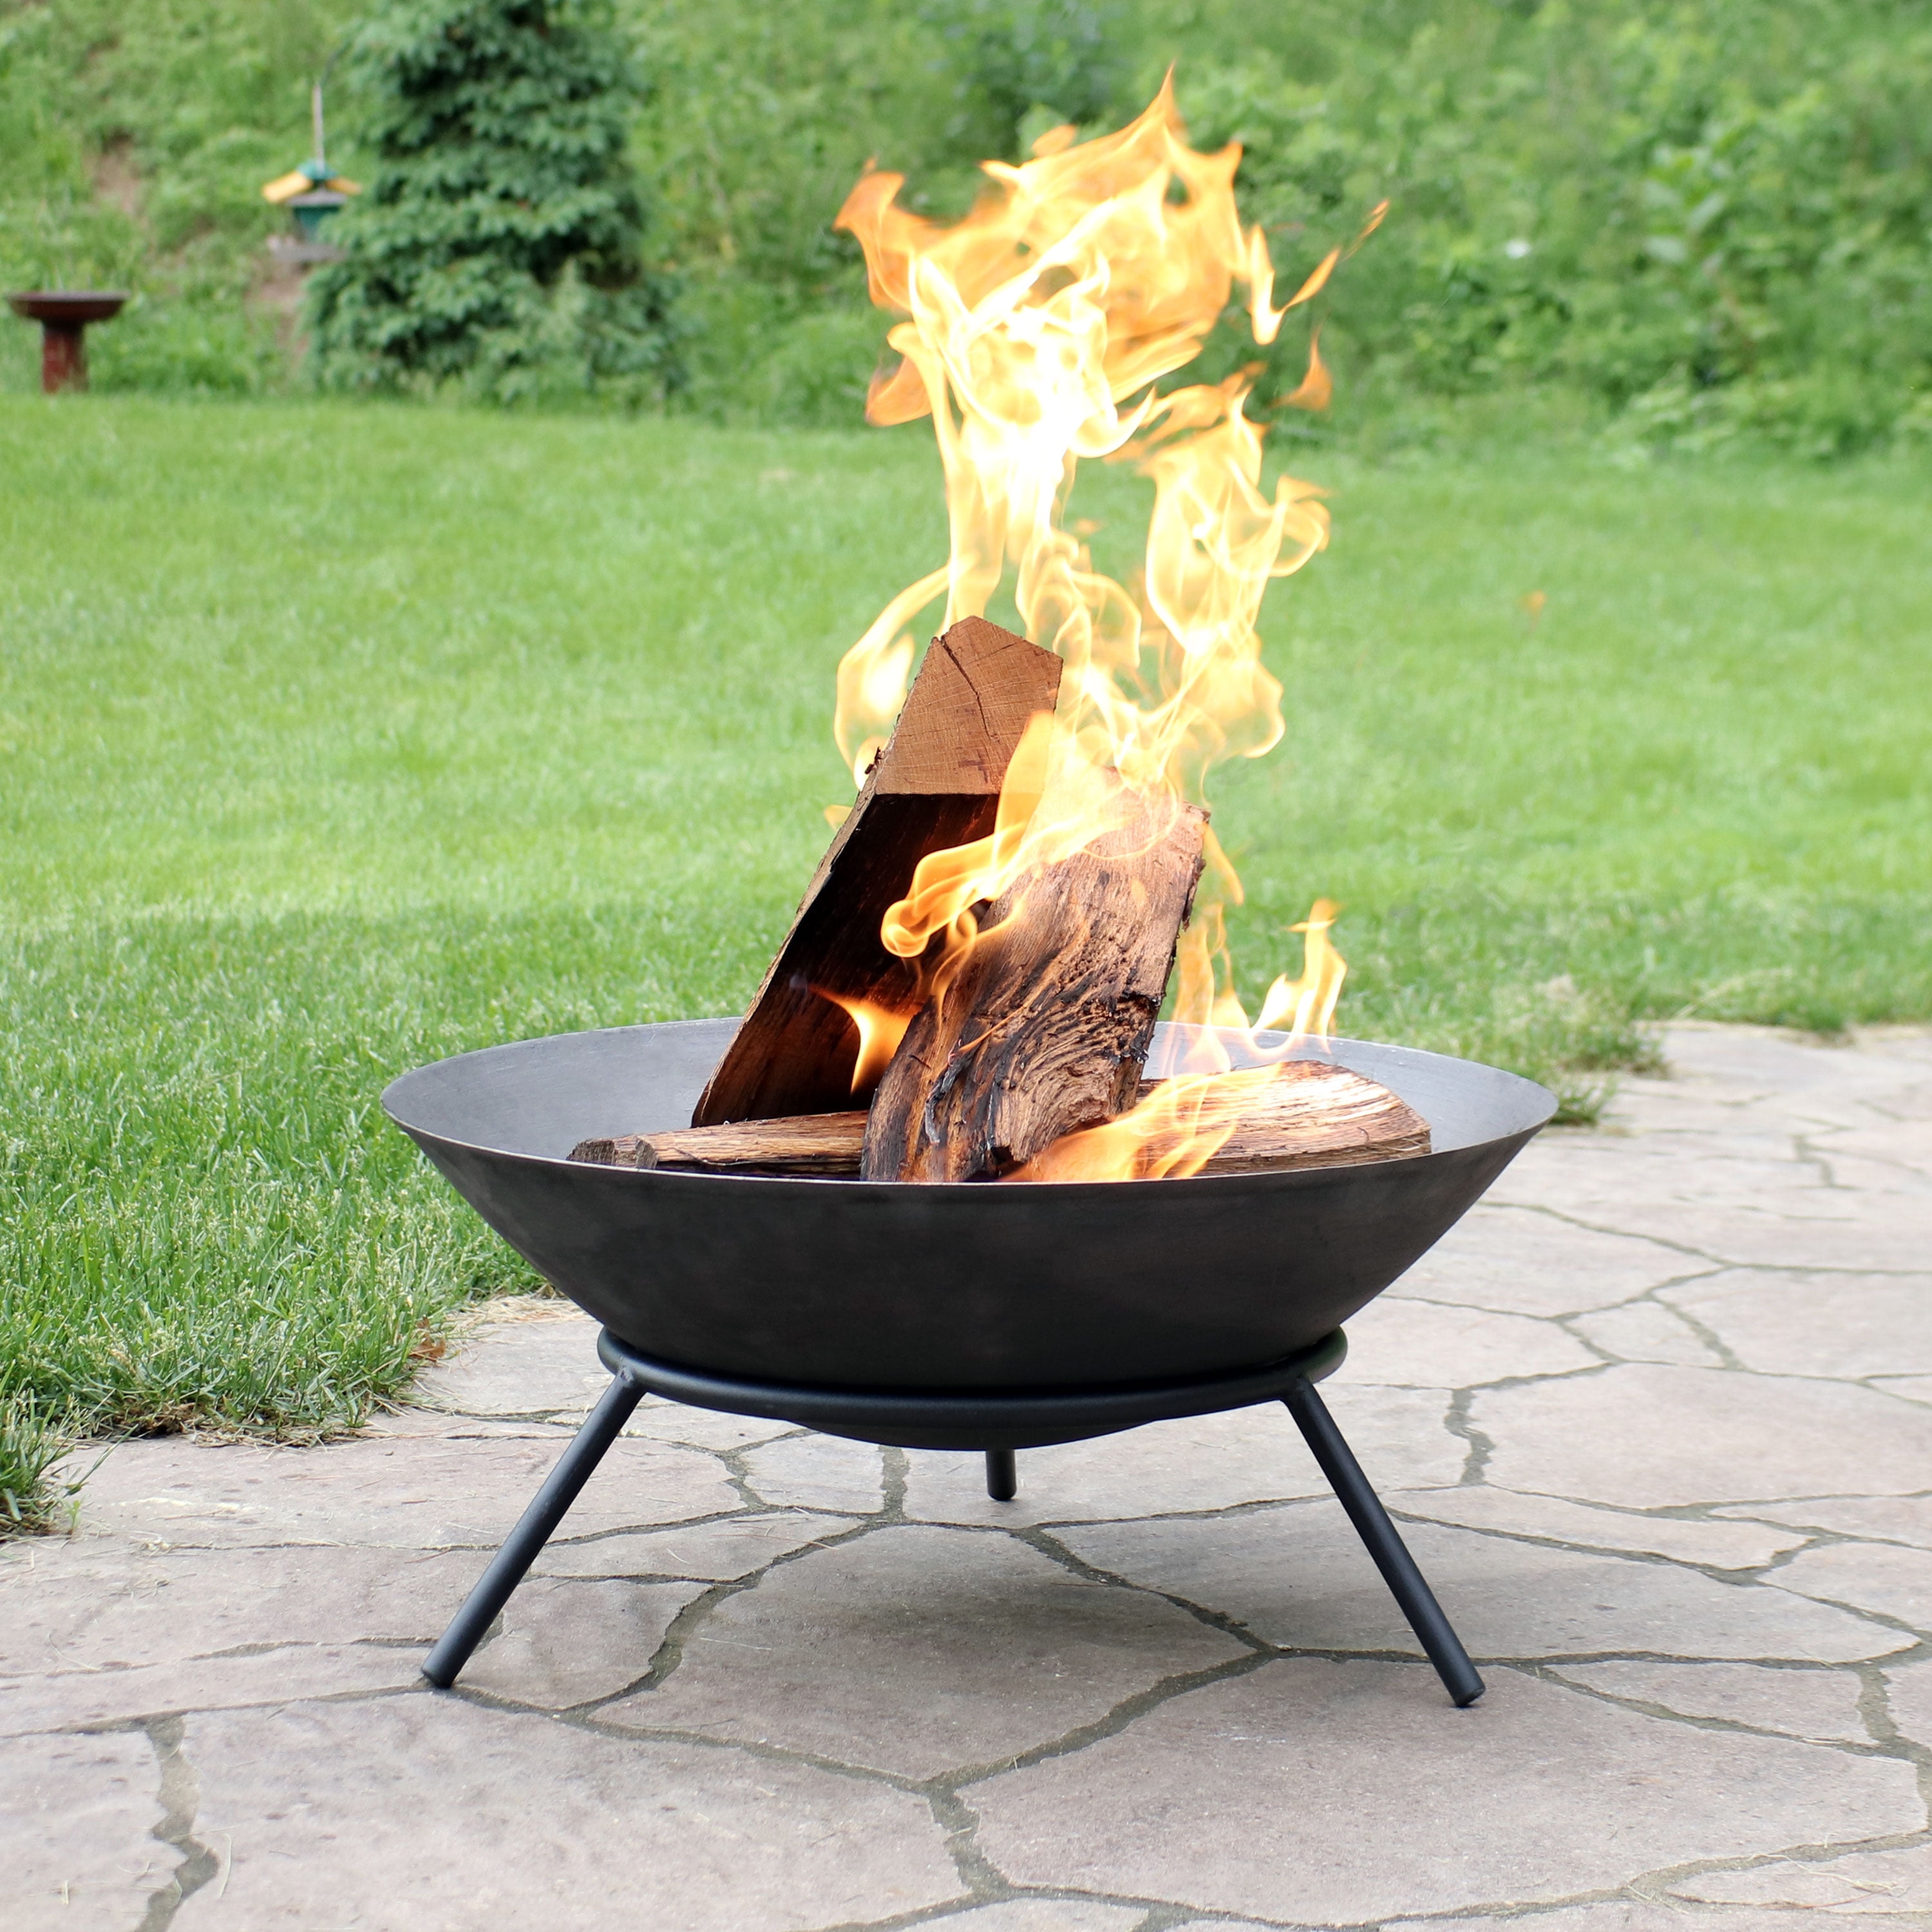 Sunnydaze Cast Iron Fire Pit Bowl, Wood Burning Patio Fire Pit